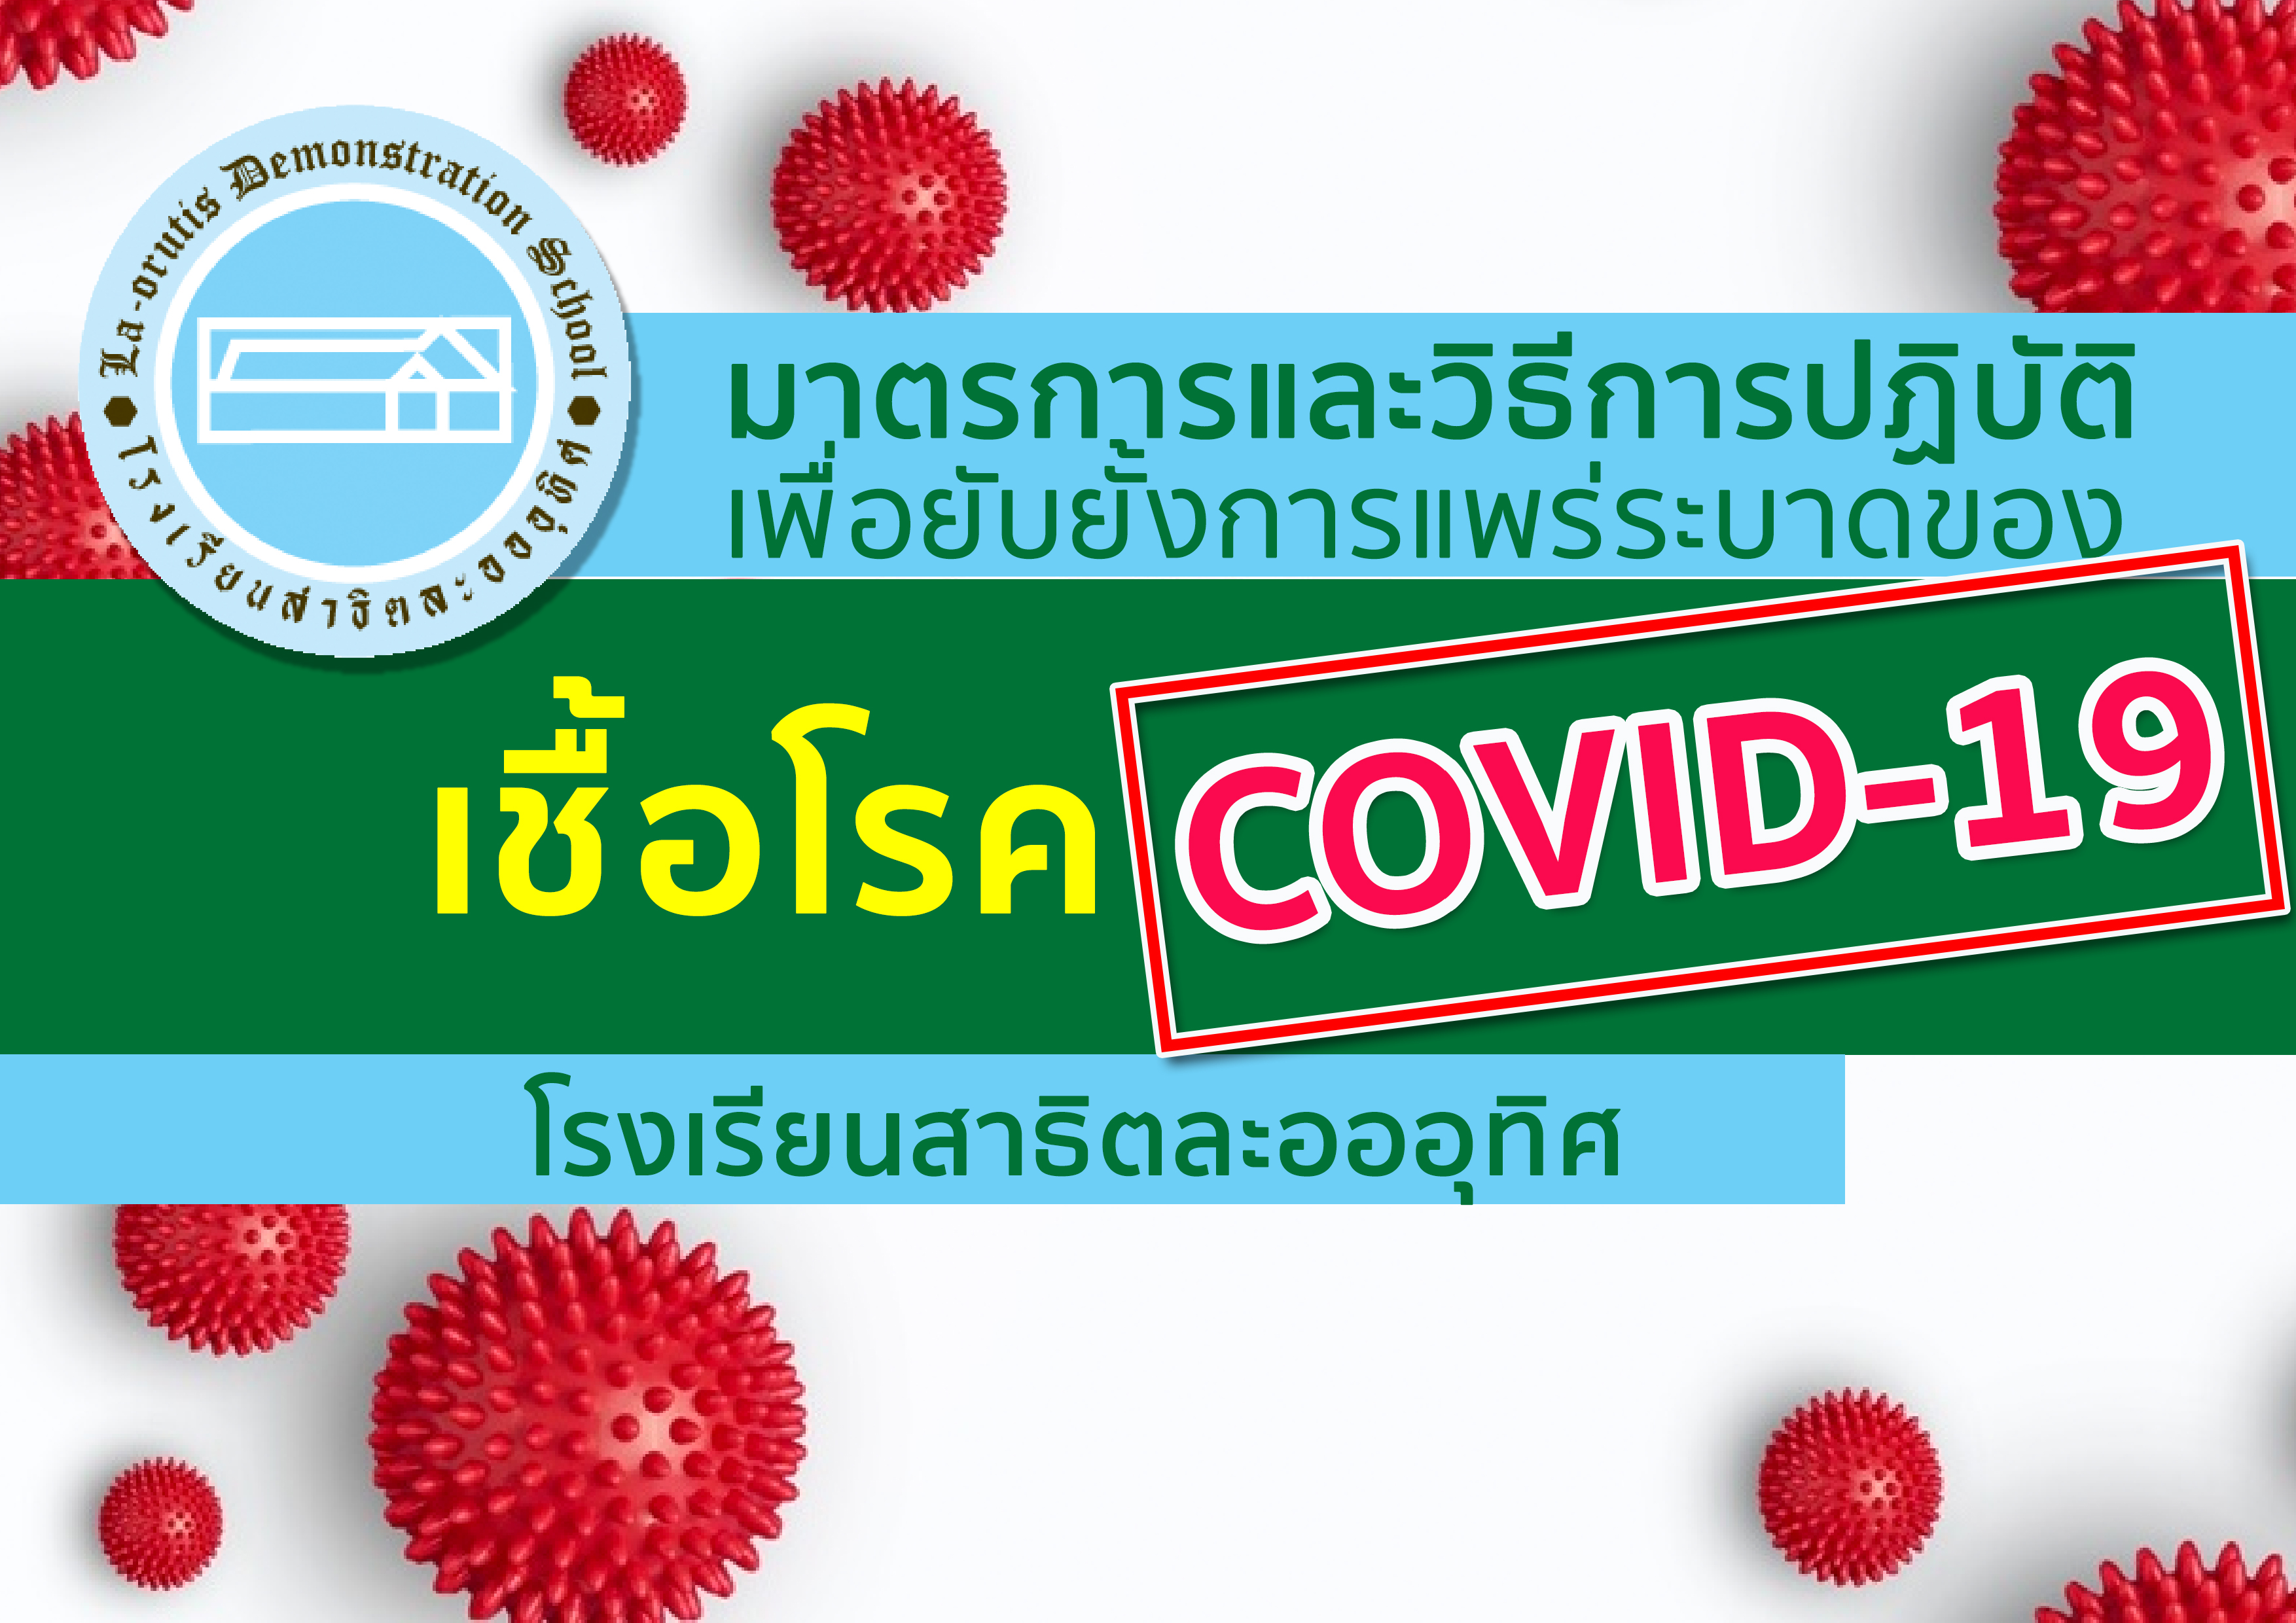 มาตรการและวิธีป้องกันการแพร่ระบาดของเชื้อโรค COVID-19 ของโรงเรียนสาธิตละอออุทิศ